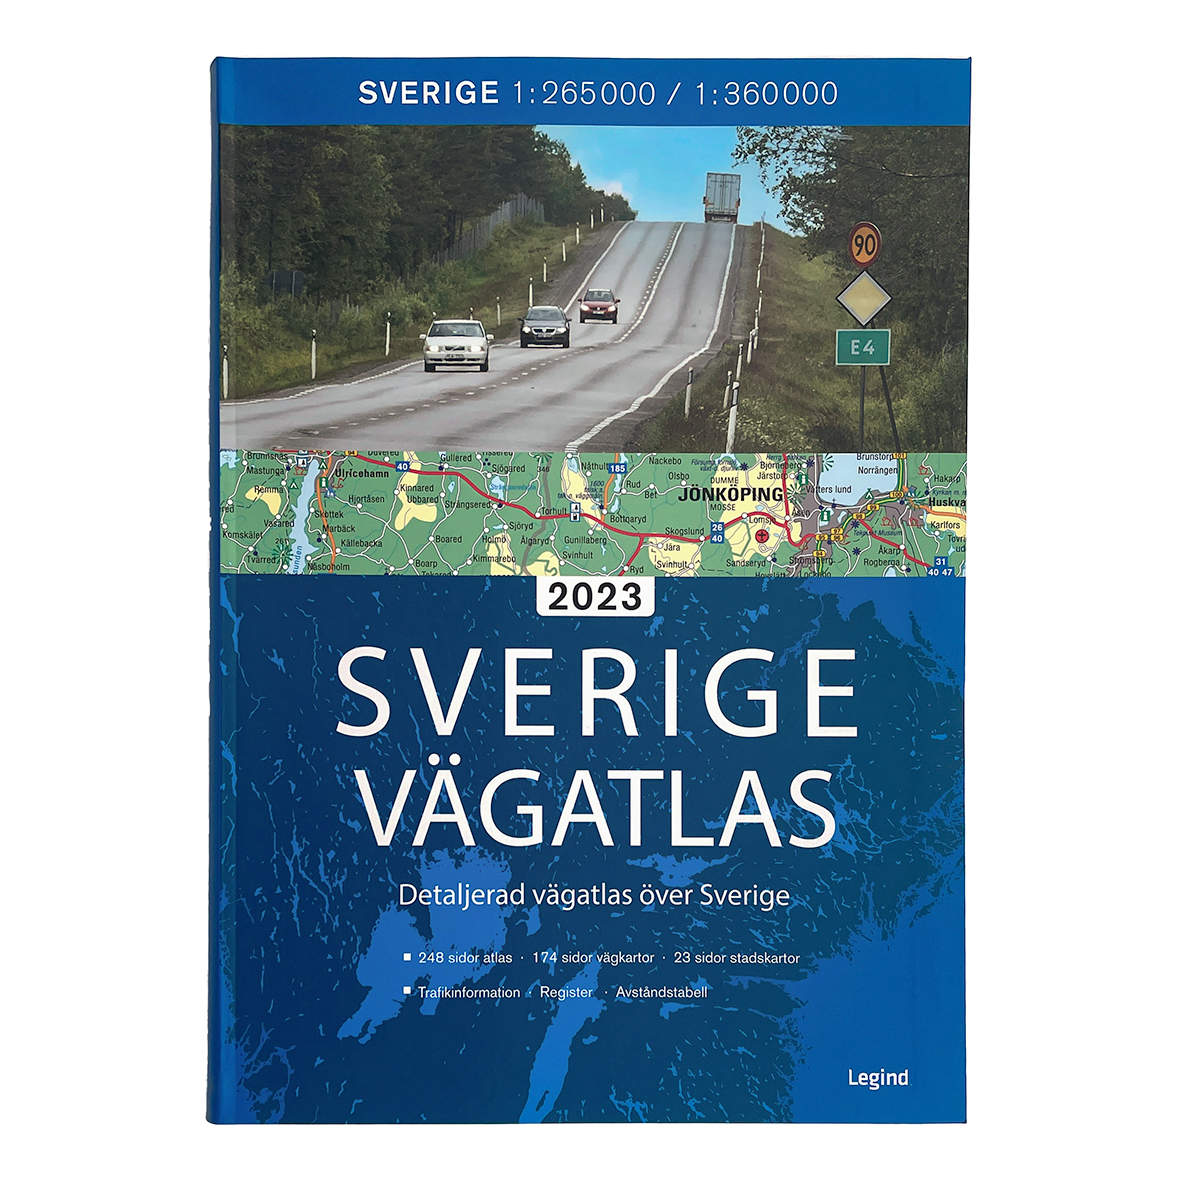 Sveriges bästa vägatlas med tydliga, lättlästa kartor.